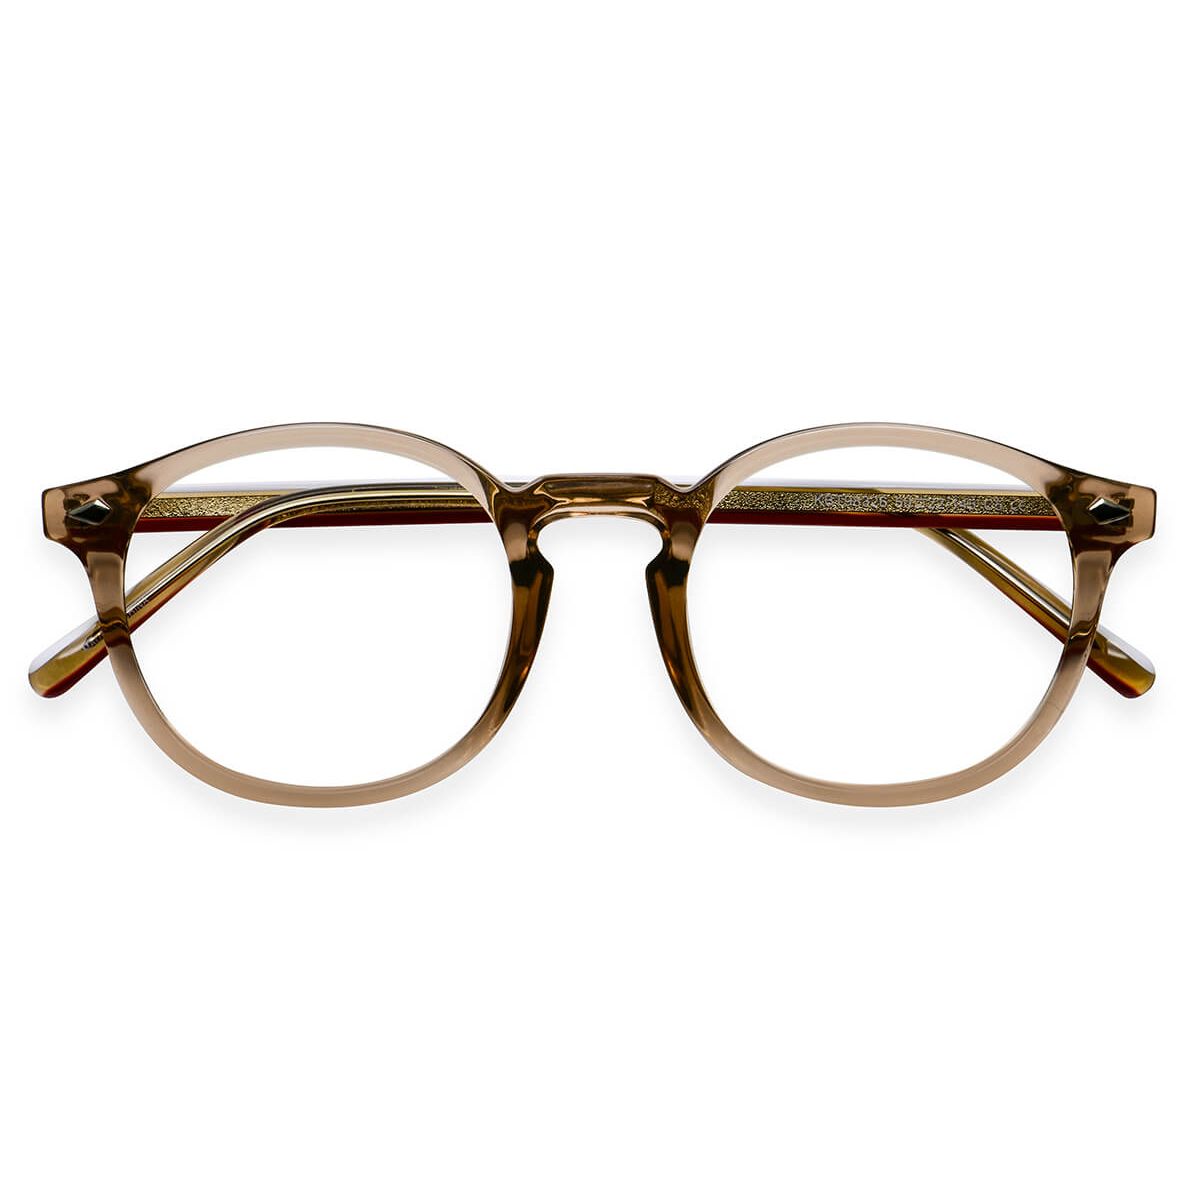 Kbt98326 Round Brown Eyeglasses Frames Leoptique